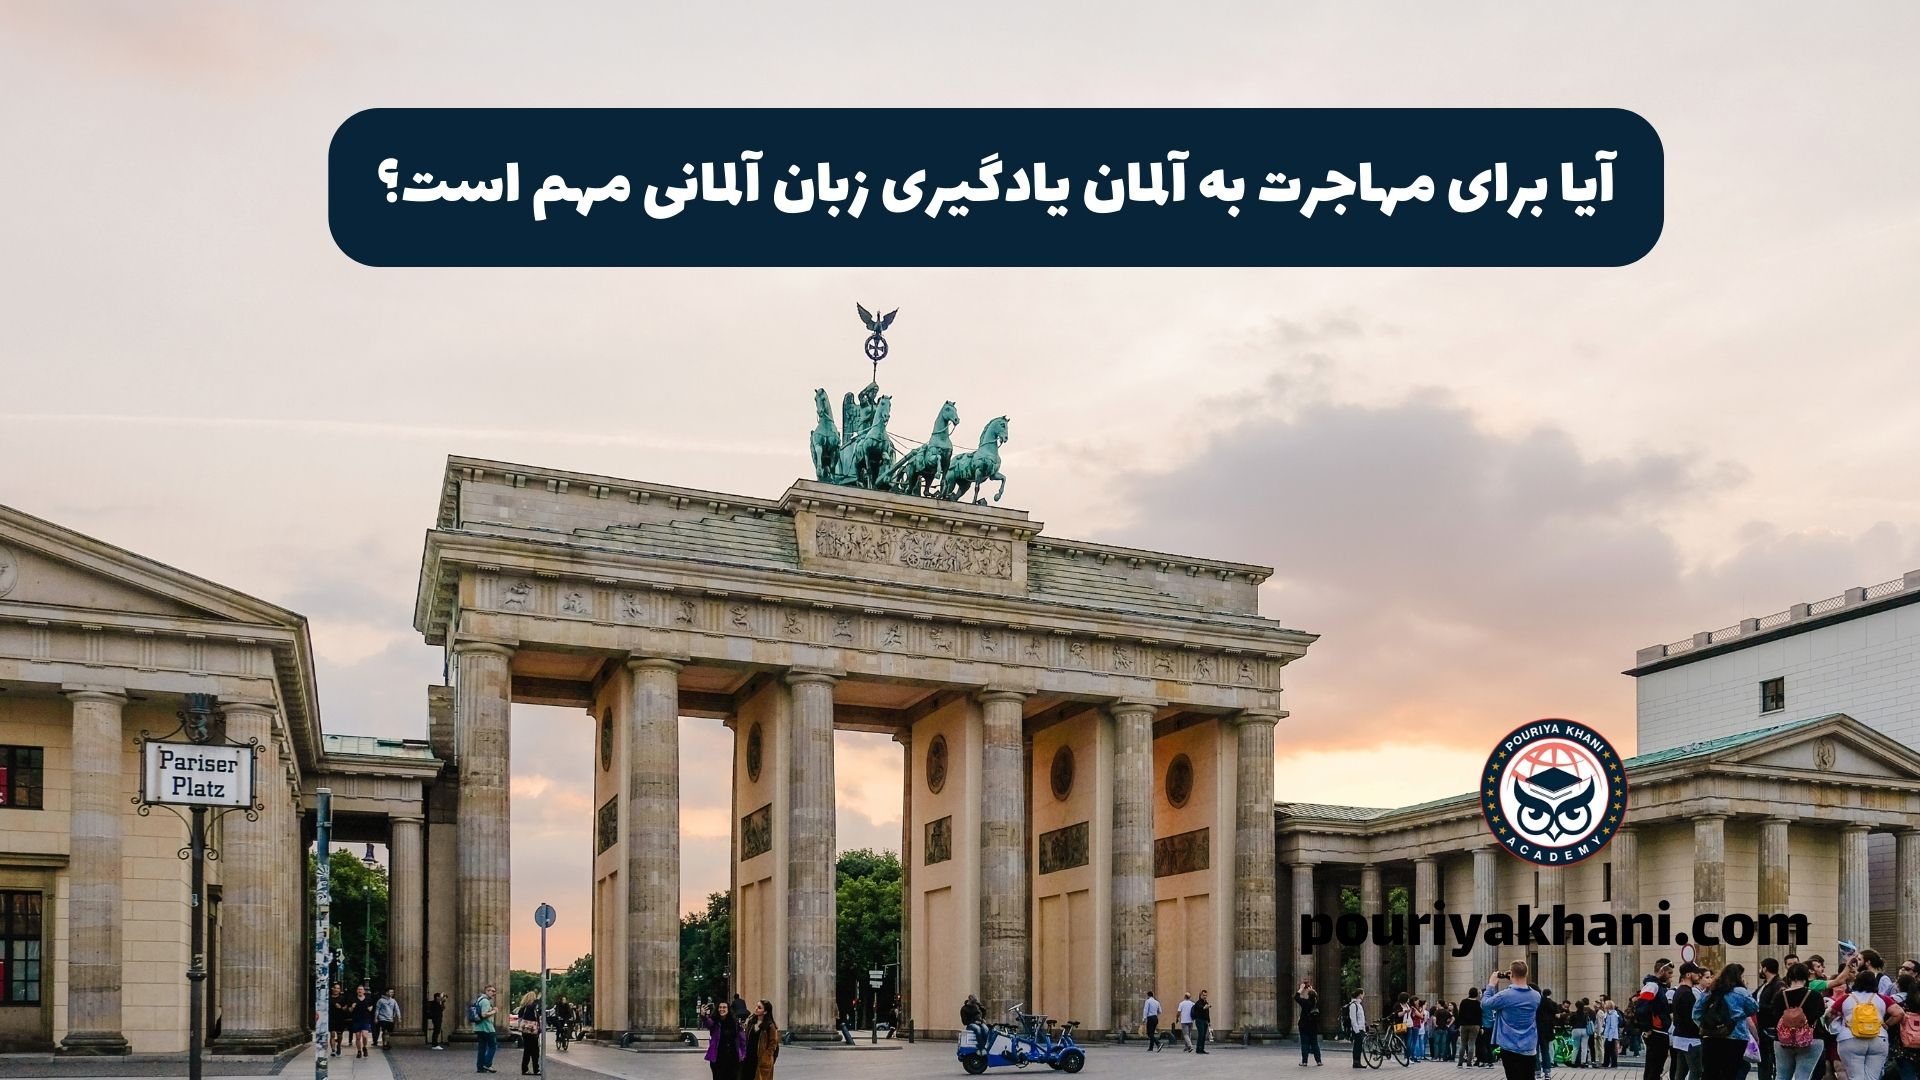 آیا برای مهاجرت به آلمان، یادگیری زبان آلمانی مهم است؟